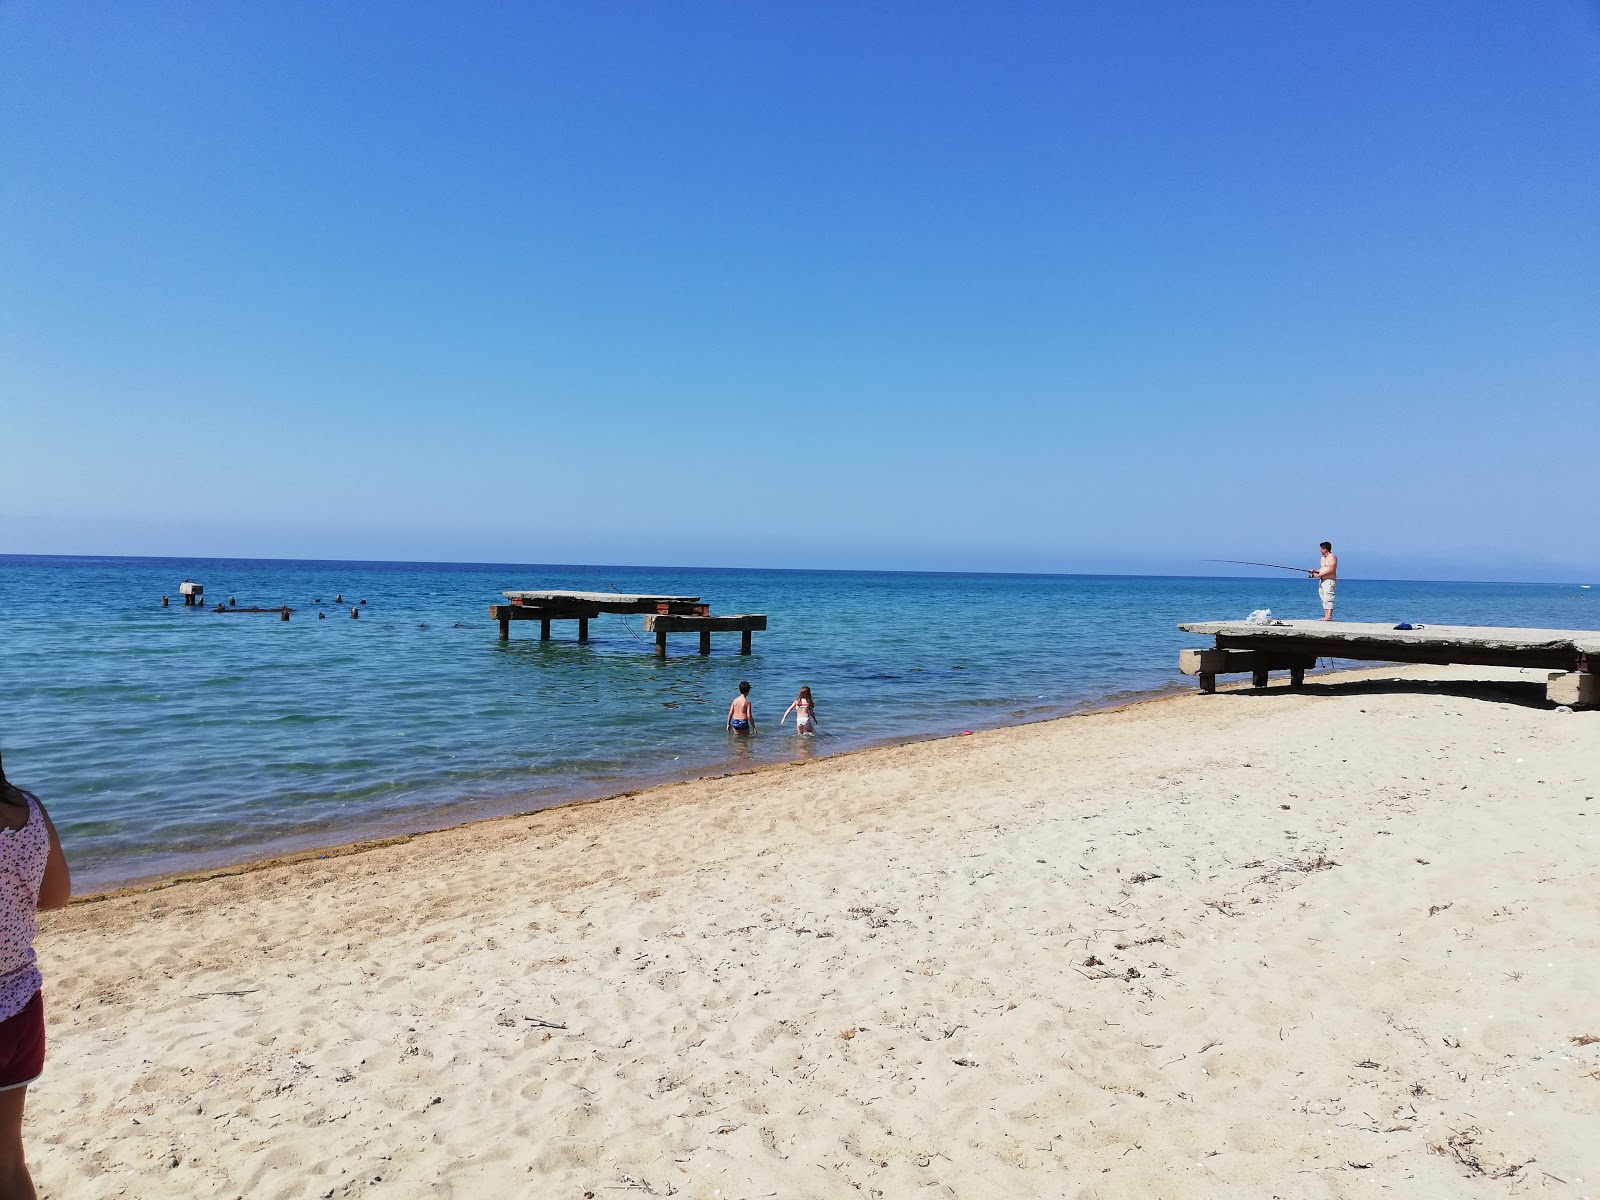 Photo de Vakif beach - endroit populaire parmi les connaisseurs de la détente